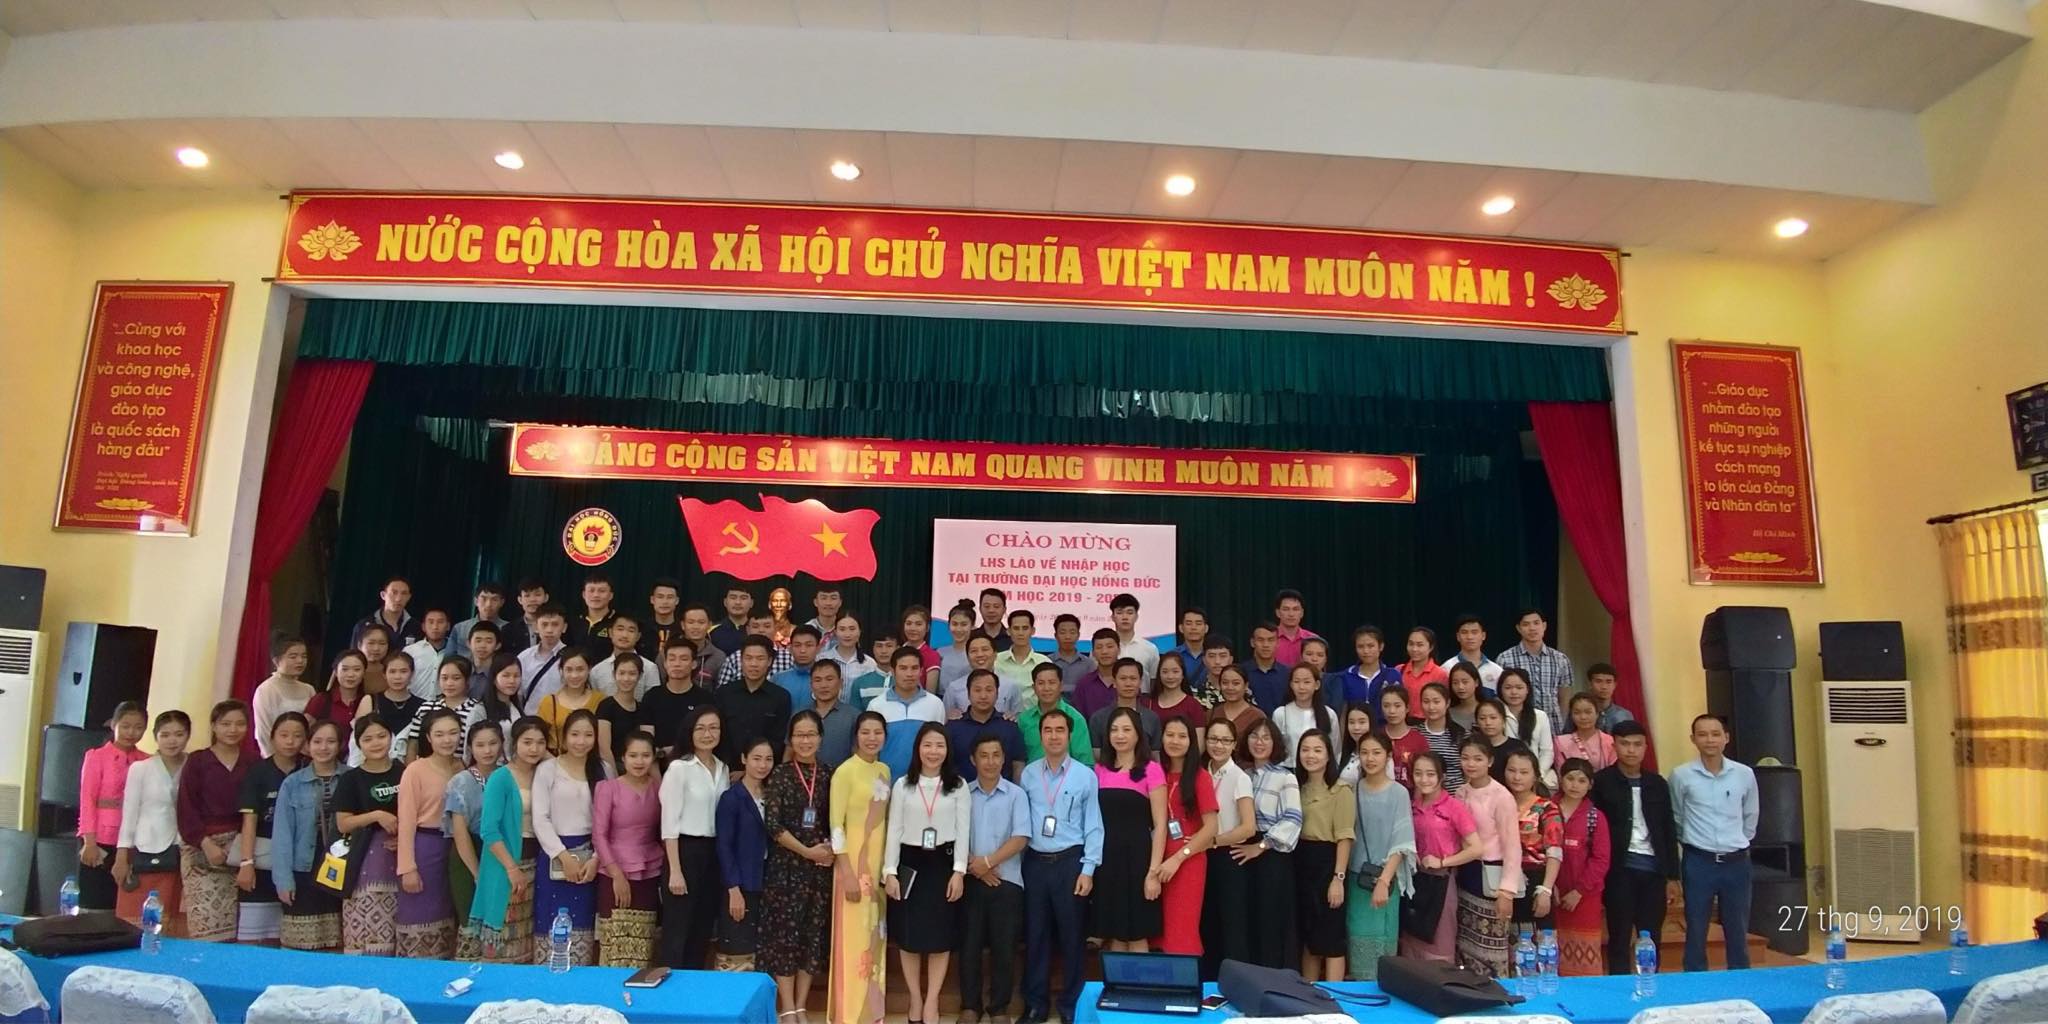 Chào đón LHS Lào về nhập học tại khoa Khoa học xã hội năm học 2019 - 2020